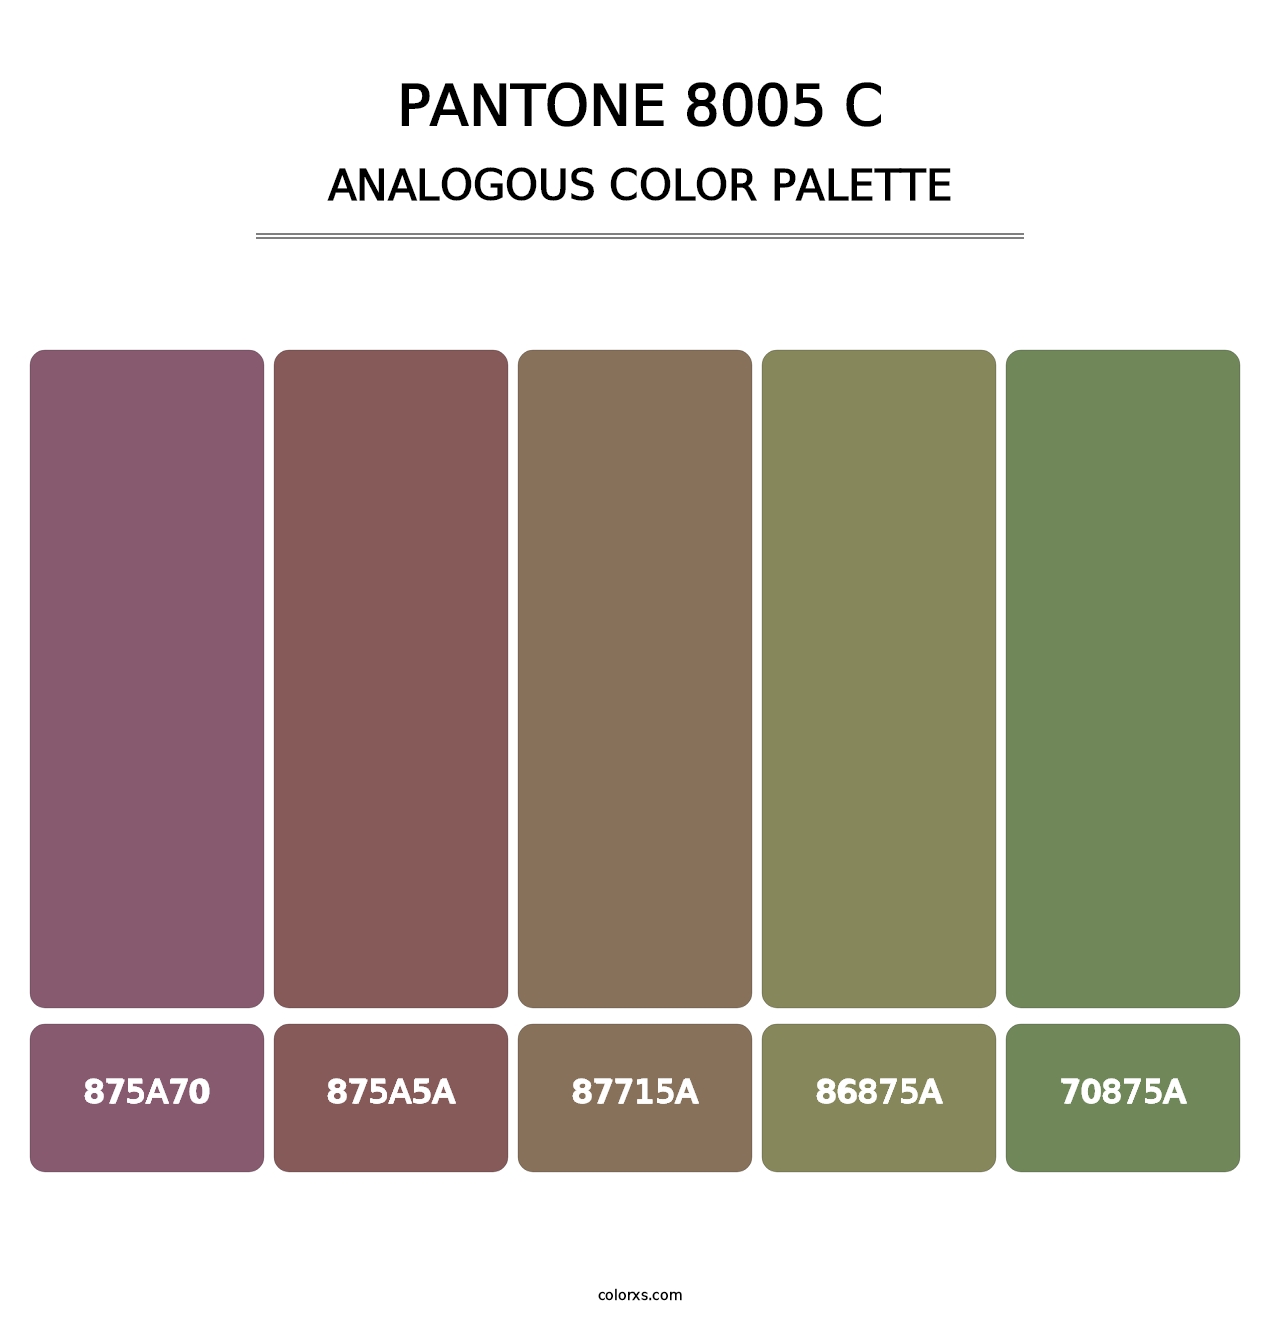 PANTONE 8005 C - Analogous Color Palette